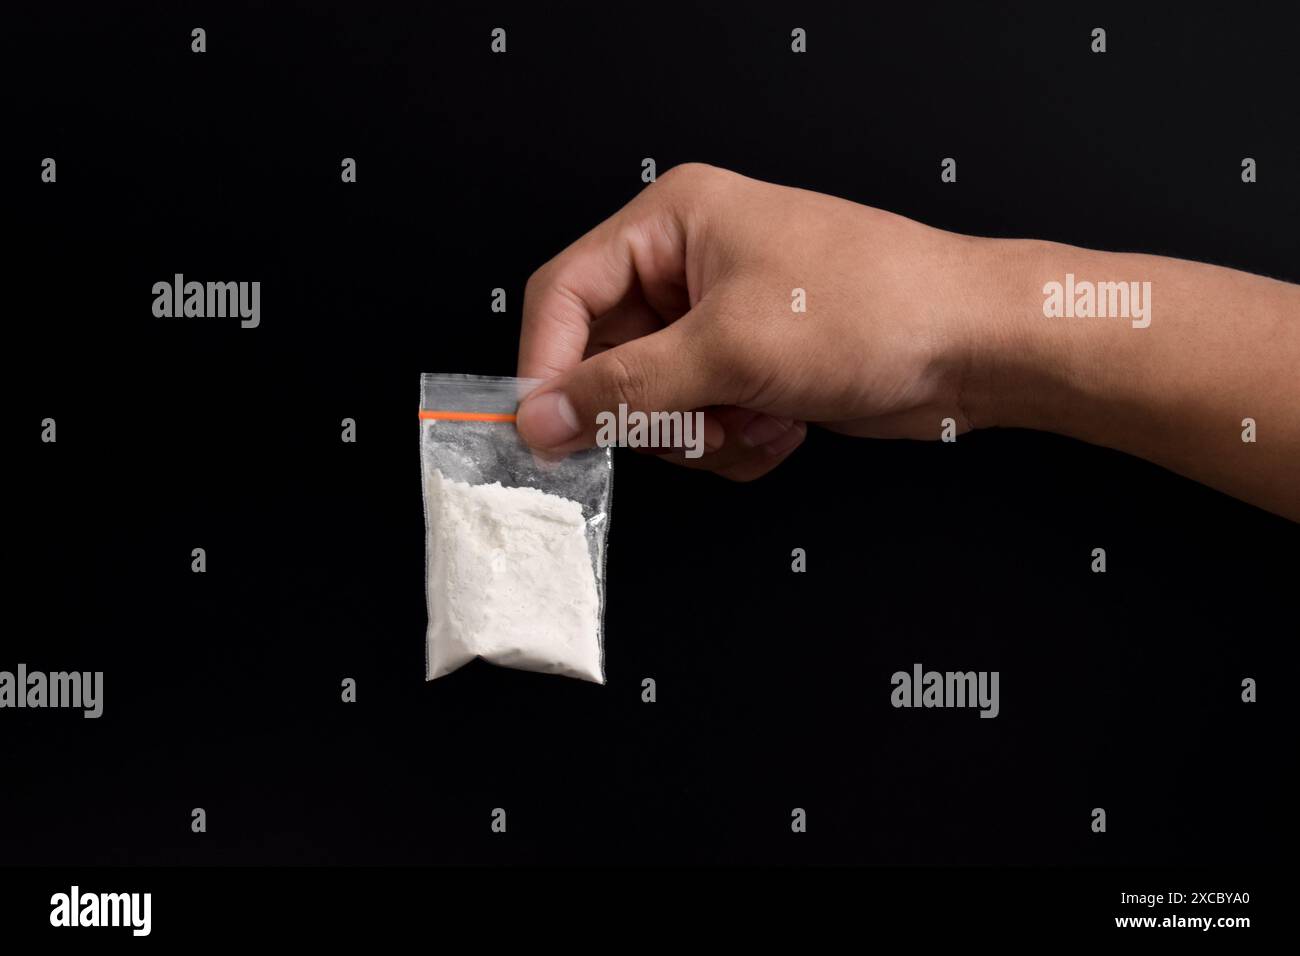 Mano che tiene la cocaina in un pacchetto di plastica isolato su sfondo nero. illustrazione di sostanze stupefacenti illegali, narcotici Foto Stock